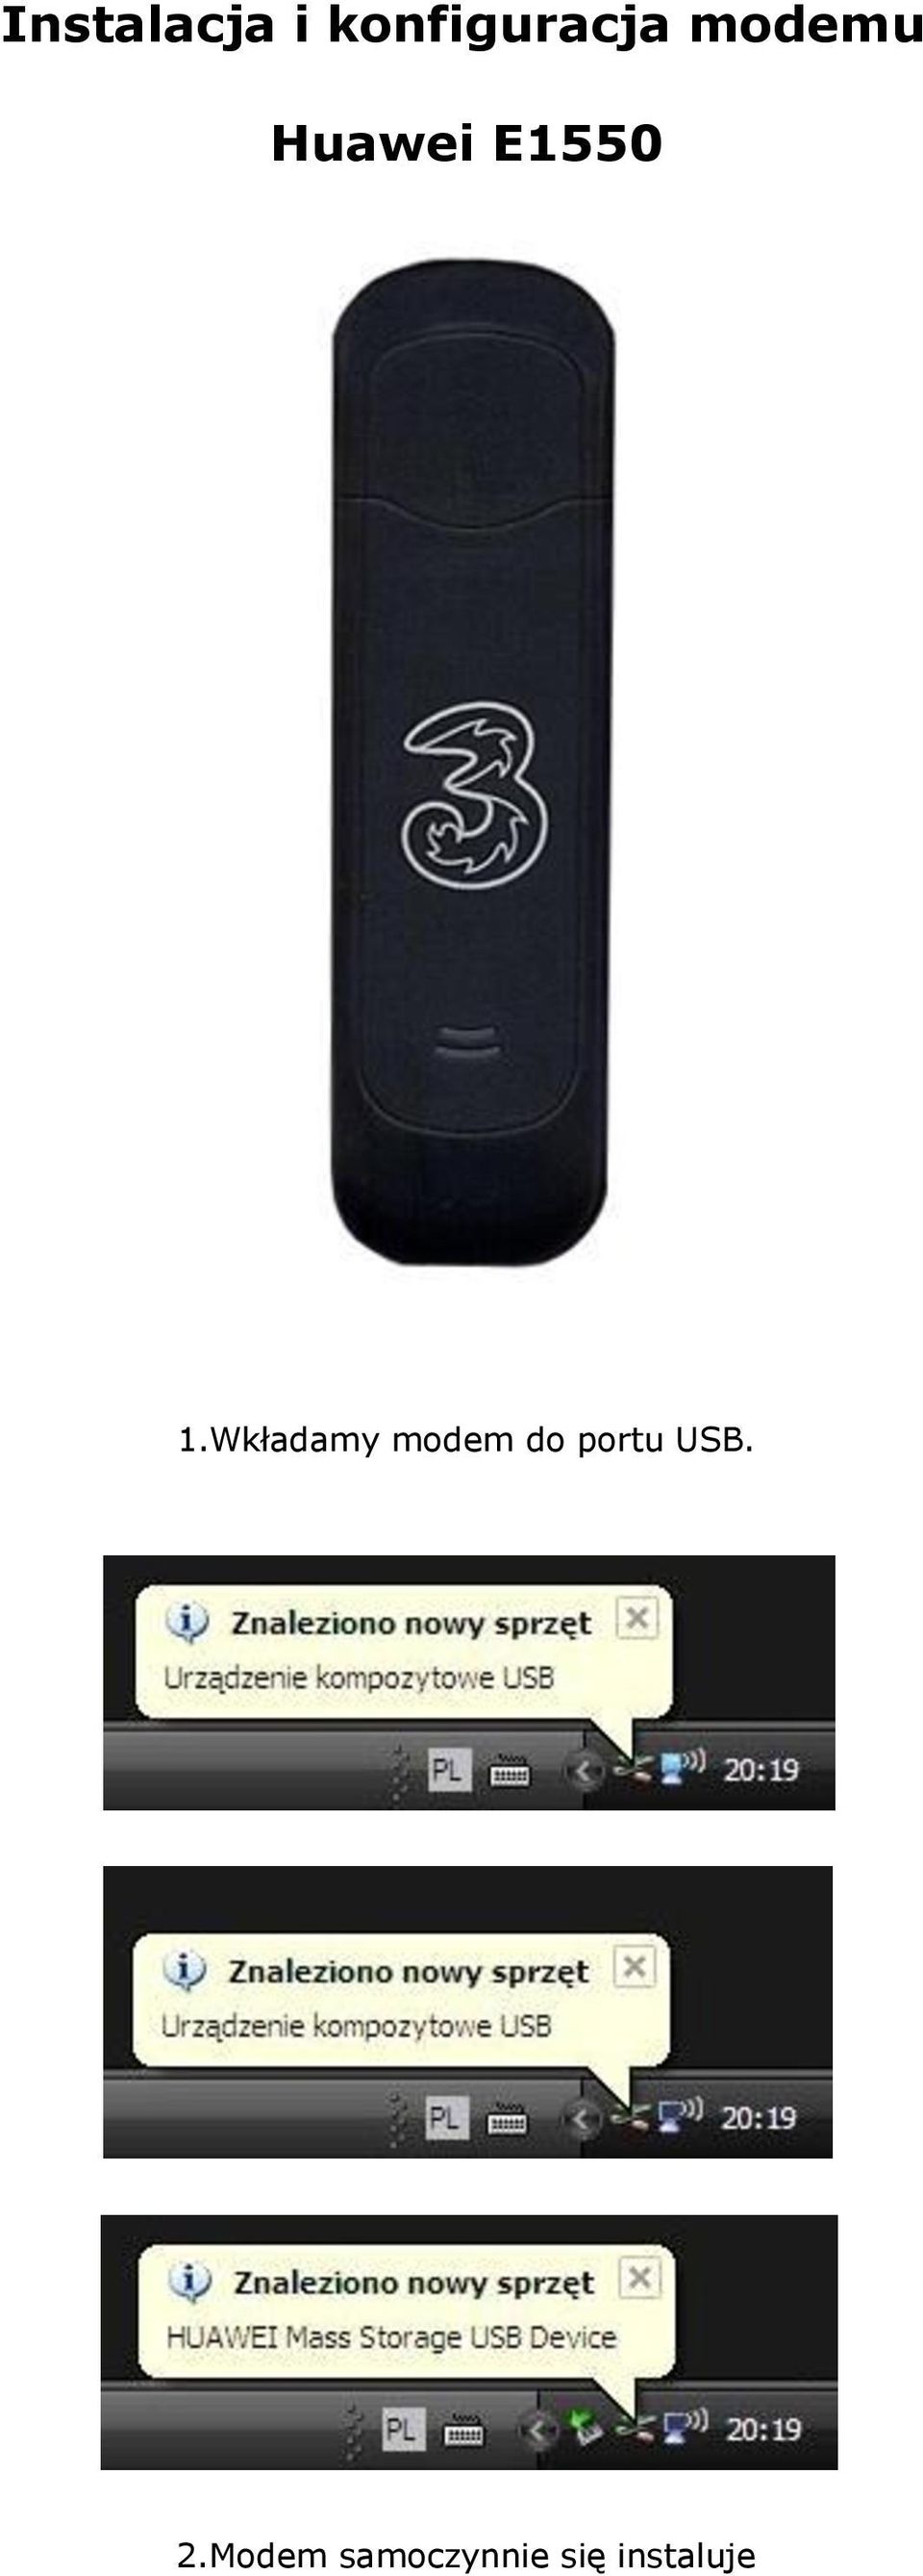 Wkładamy modem do portu USB.